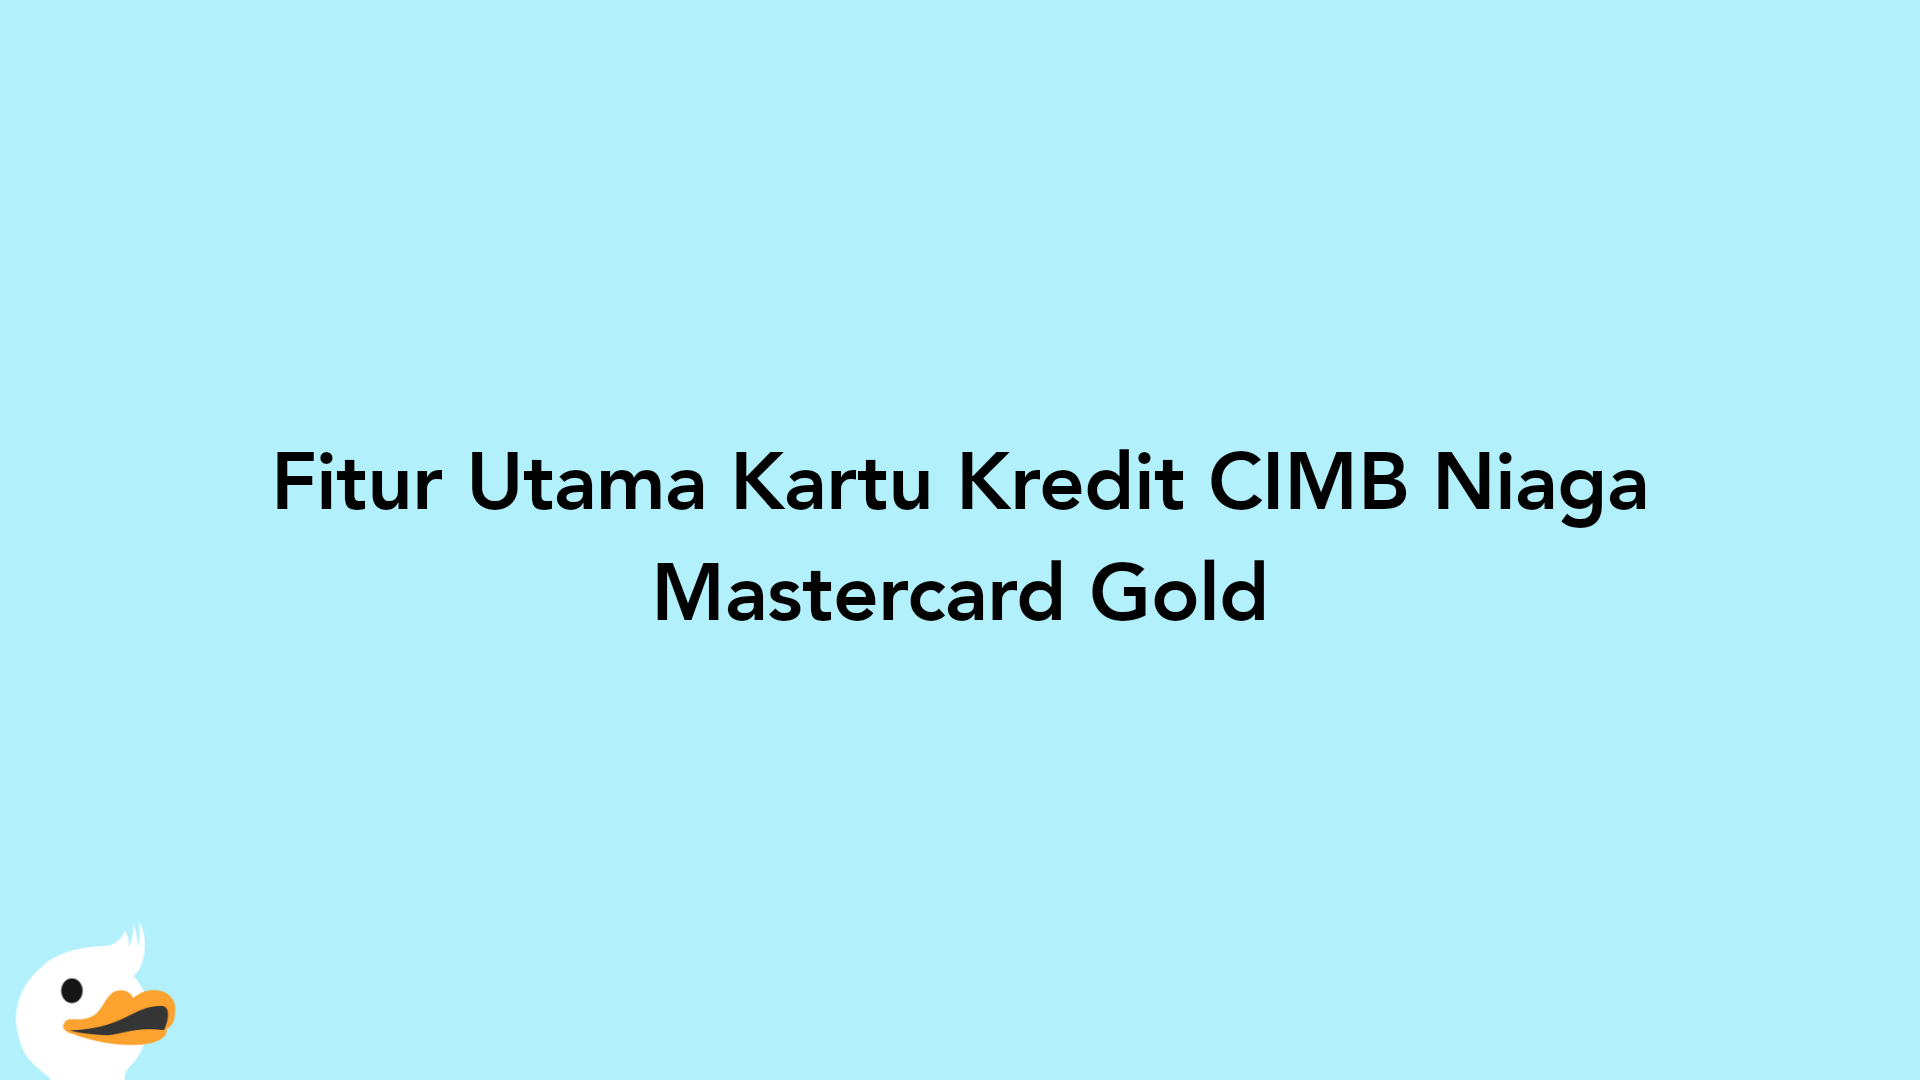 Fitur Utama Kartu Kredit CIMB Niaga Mastercard Gold